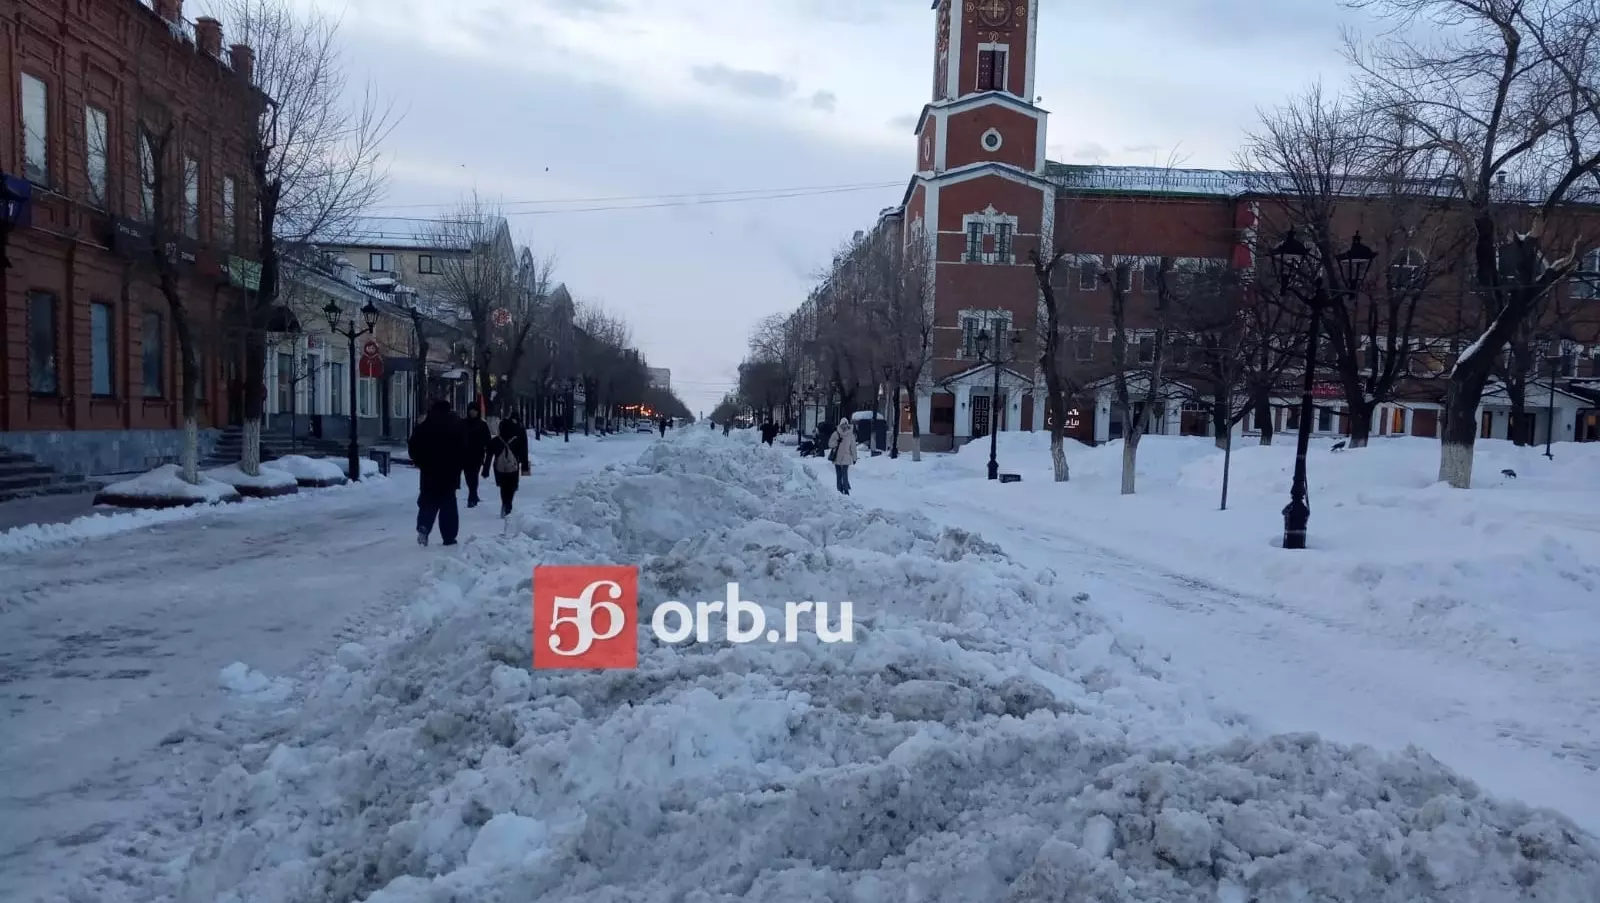 Улица Советская в Оренбурге